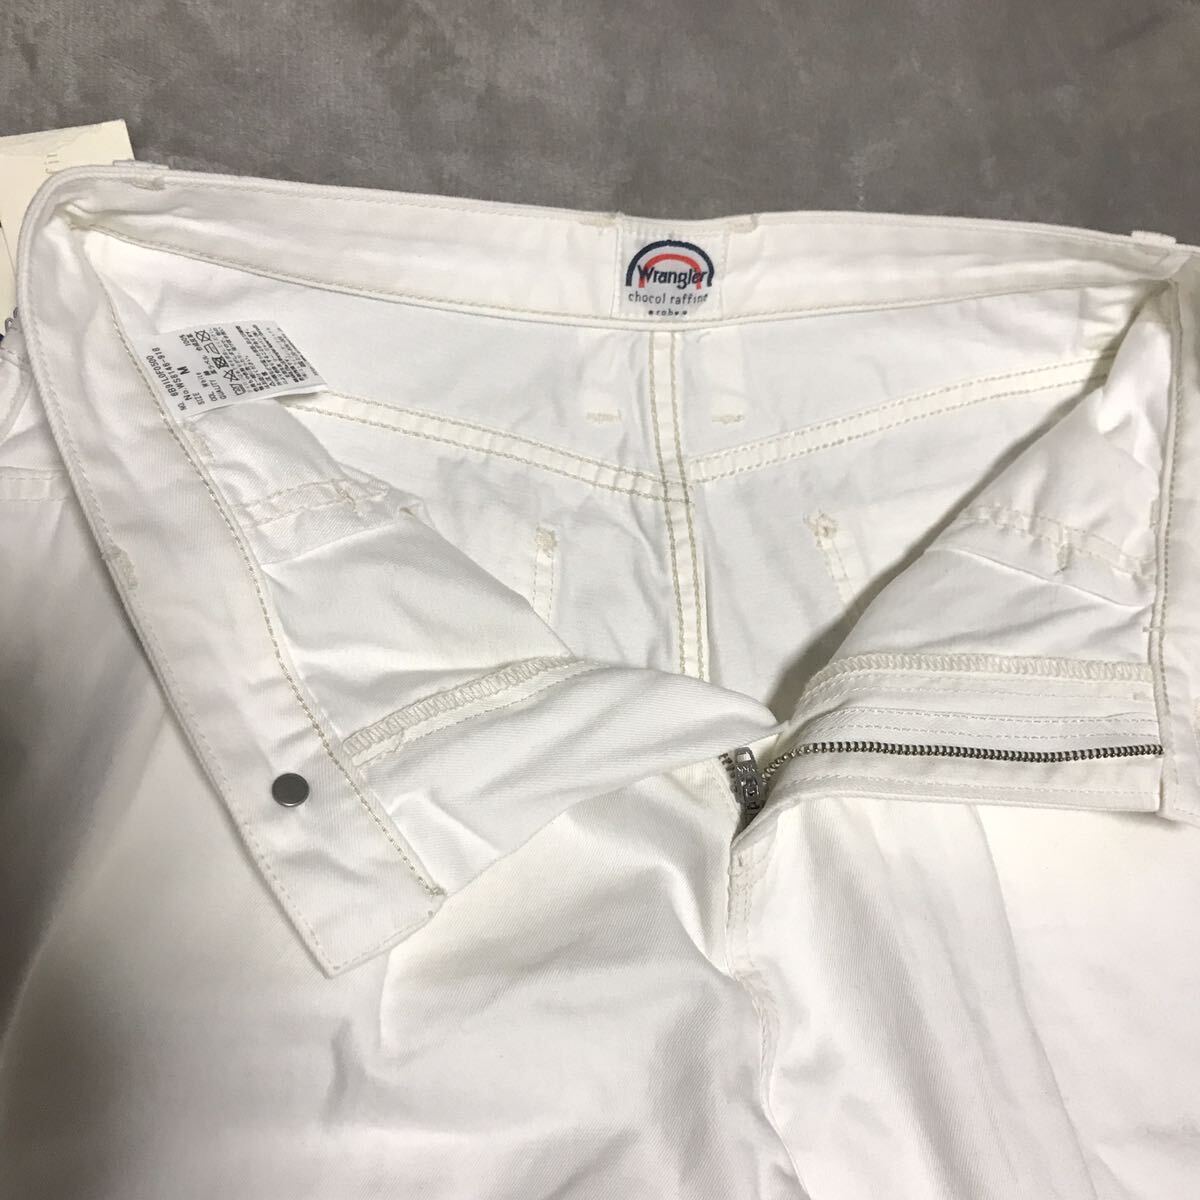 Wrangler Wrangler Denim джинсы широкий брюки белый женский M размер талия 70cm унисекс новый товар не использовался с биркой 